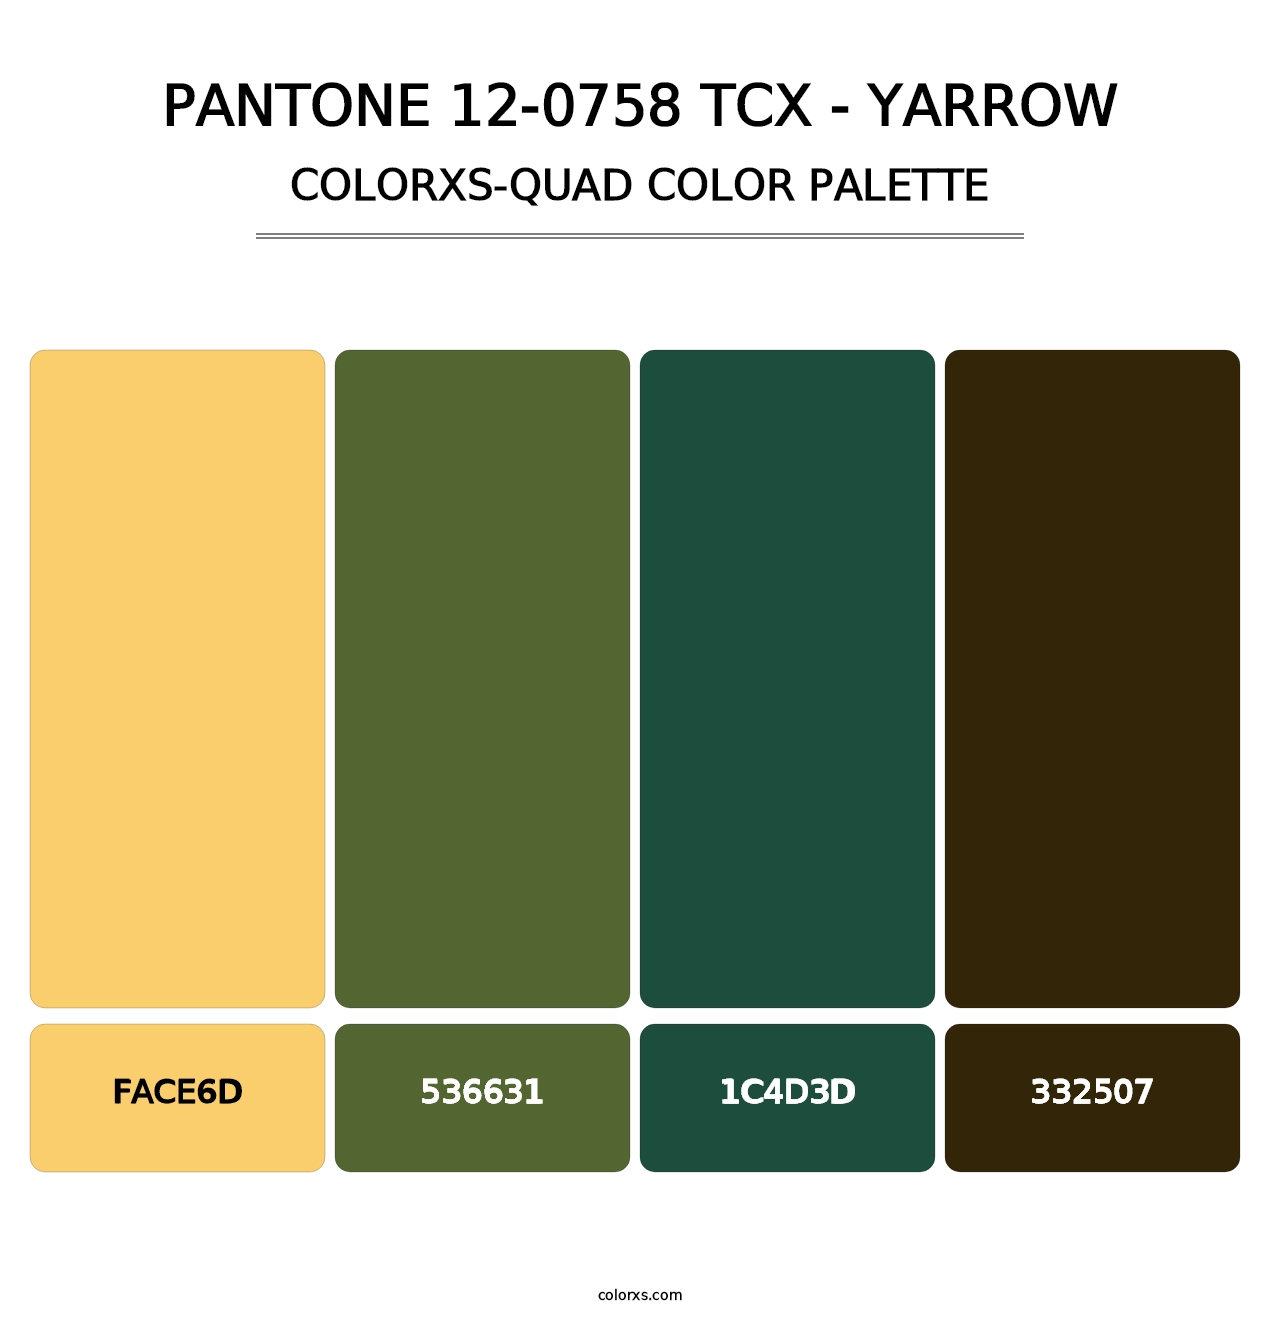 PANTONE 12-0758 TCX - Yarrow - Colorxs Quad Palette